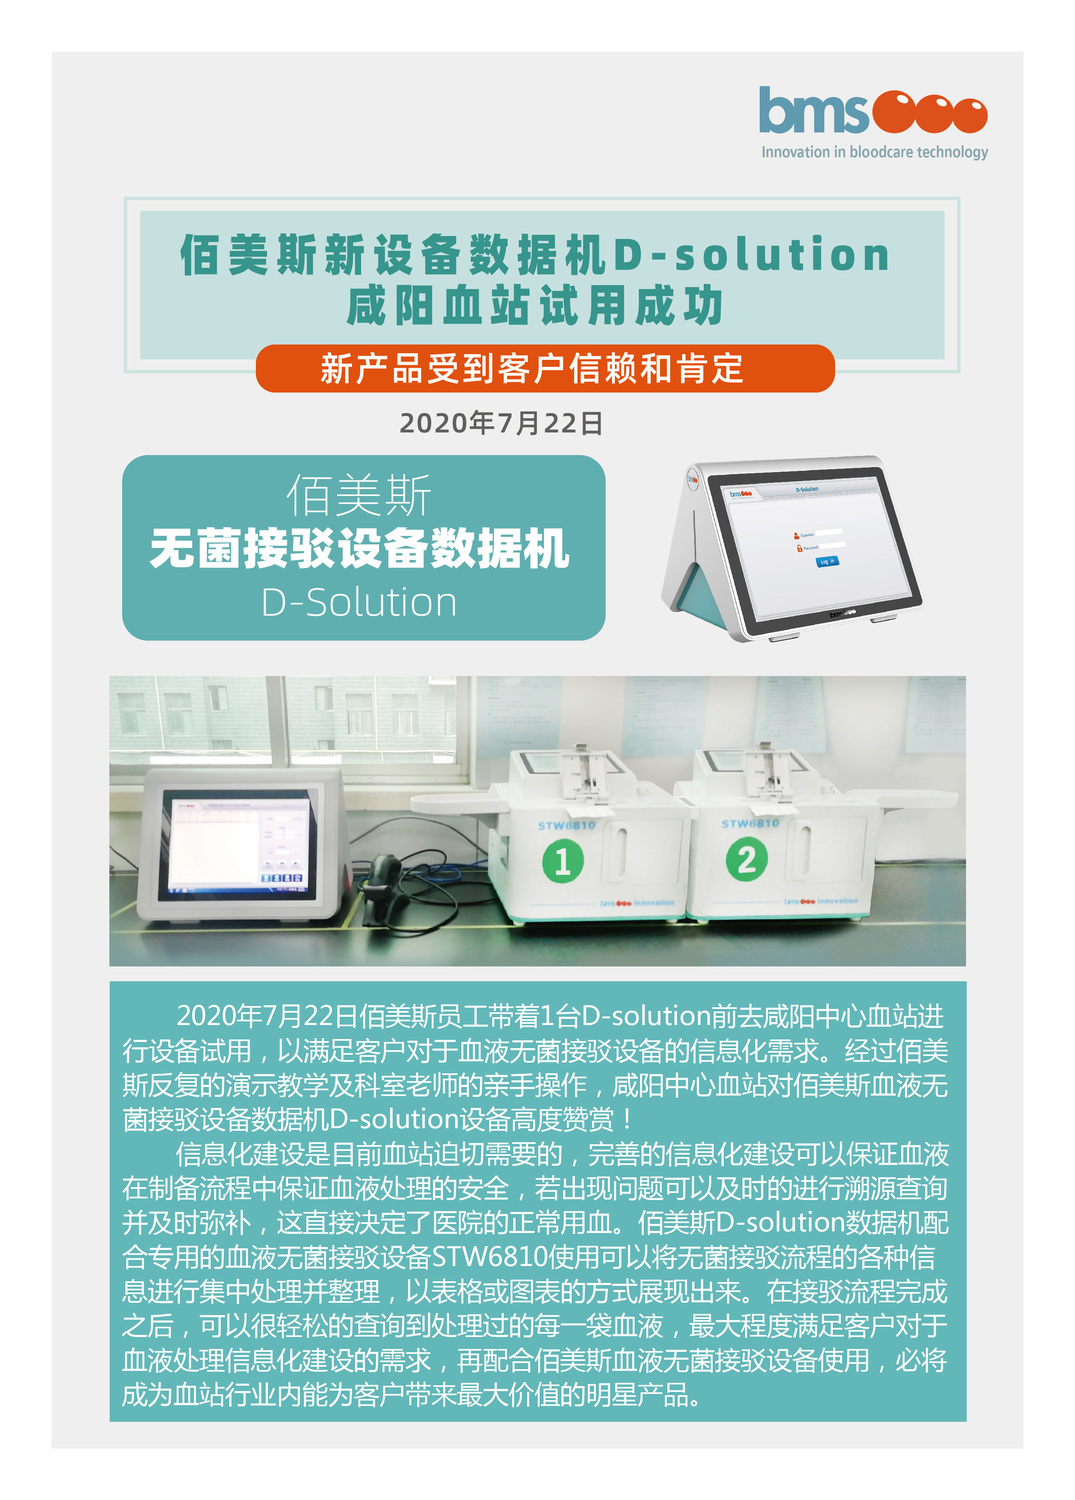 D-solution咸阳血2020站试用成功.jpg